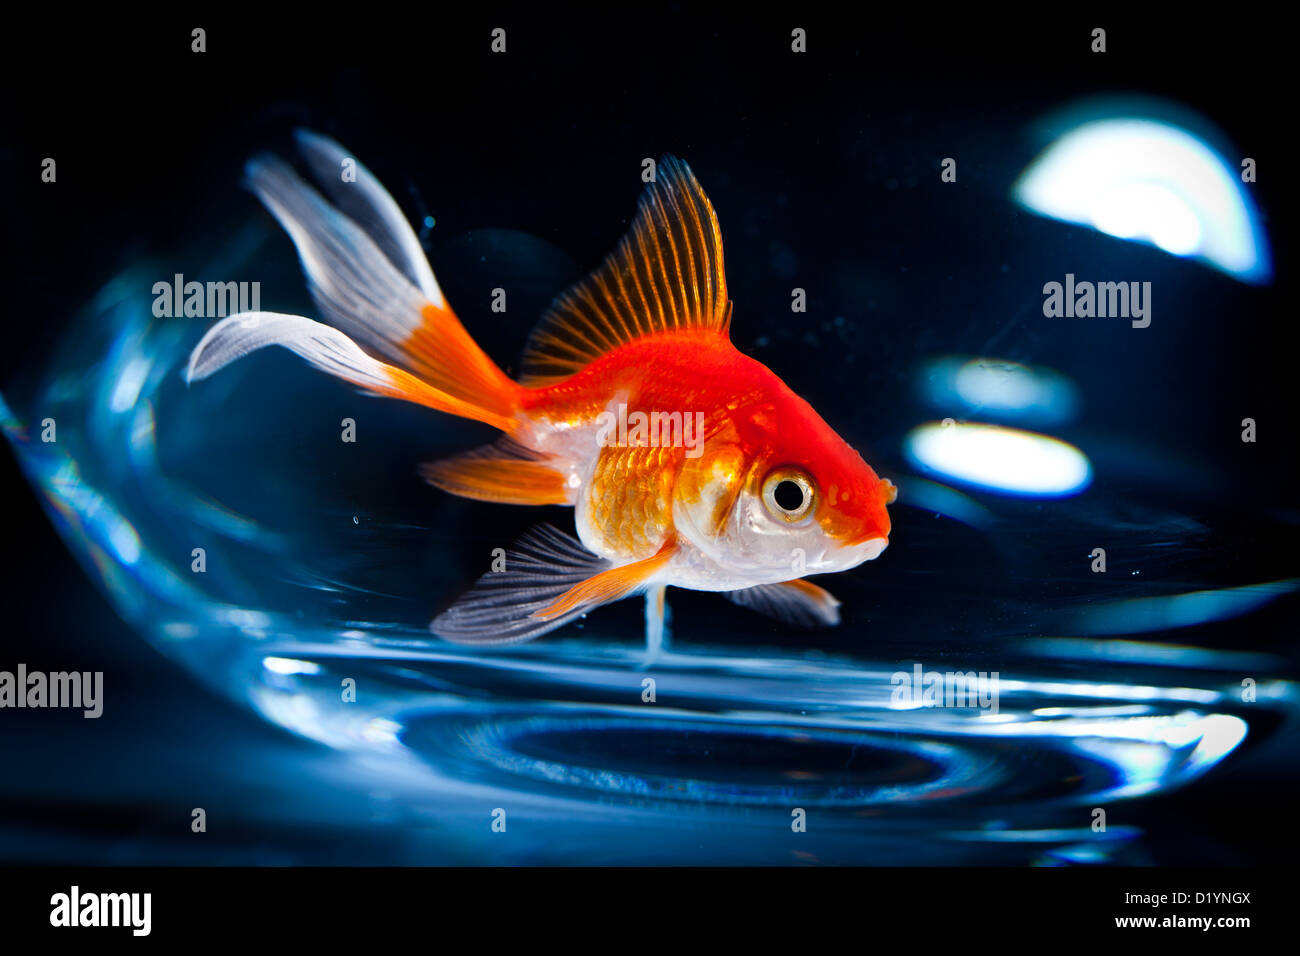 Flotteurs de poissons rouges dans un aquarium sur fond sombre Banque D'Images